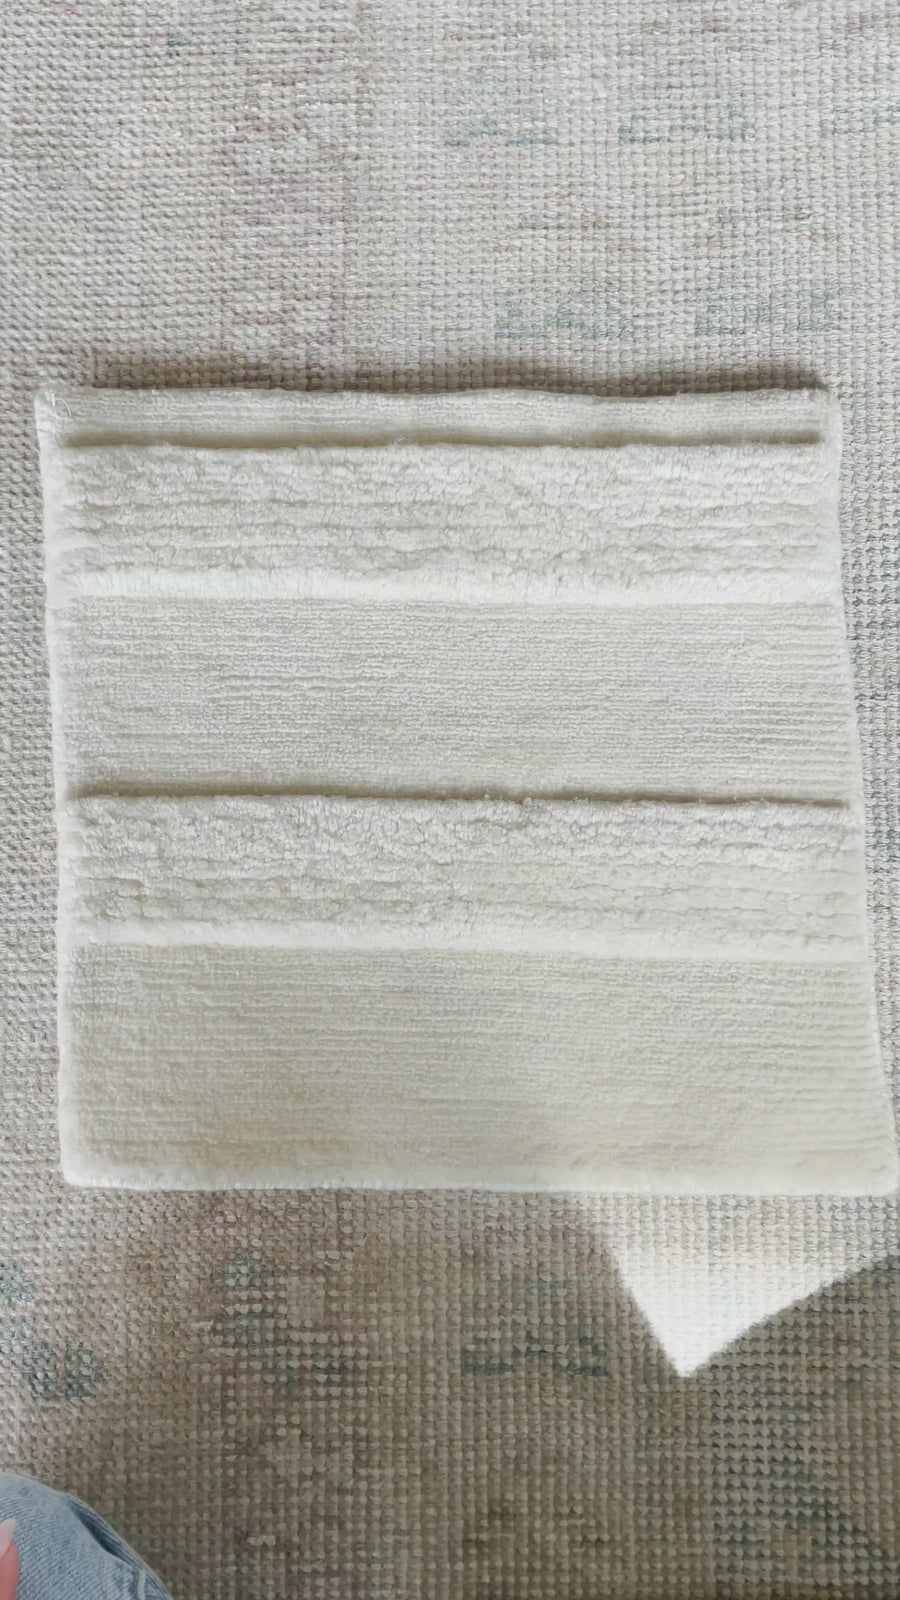 Custom Merino Wool Hand-Knotted Rug - Dokar - Natural White